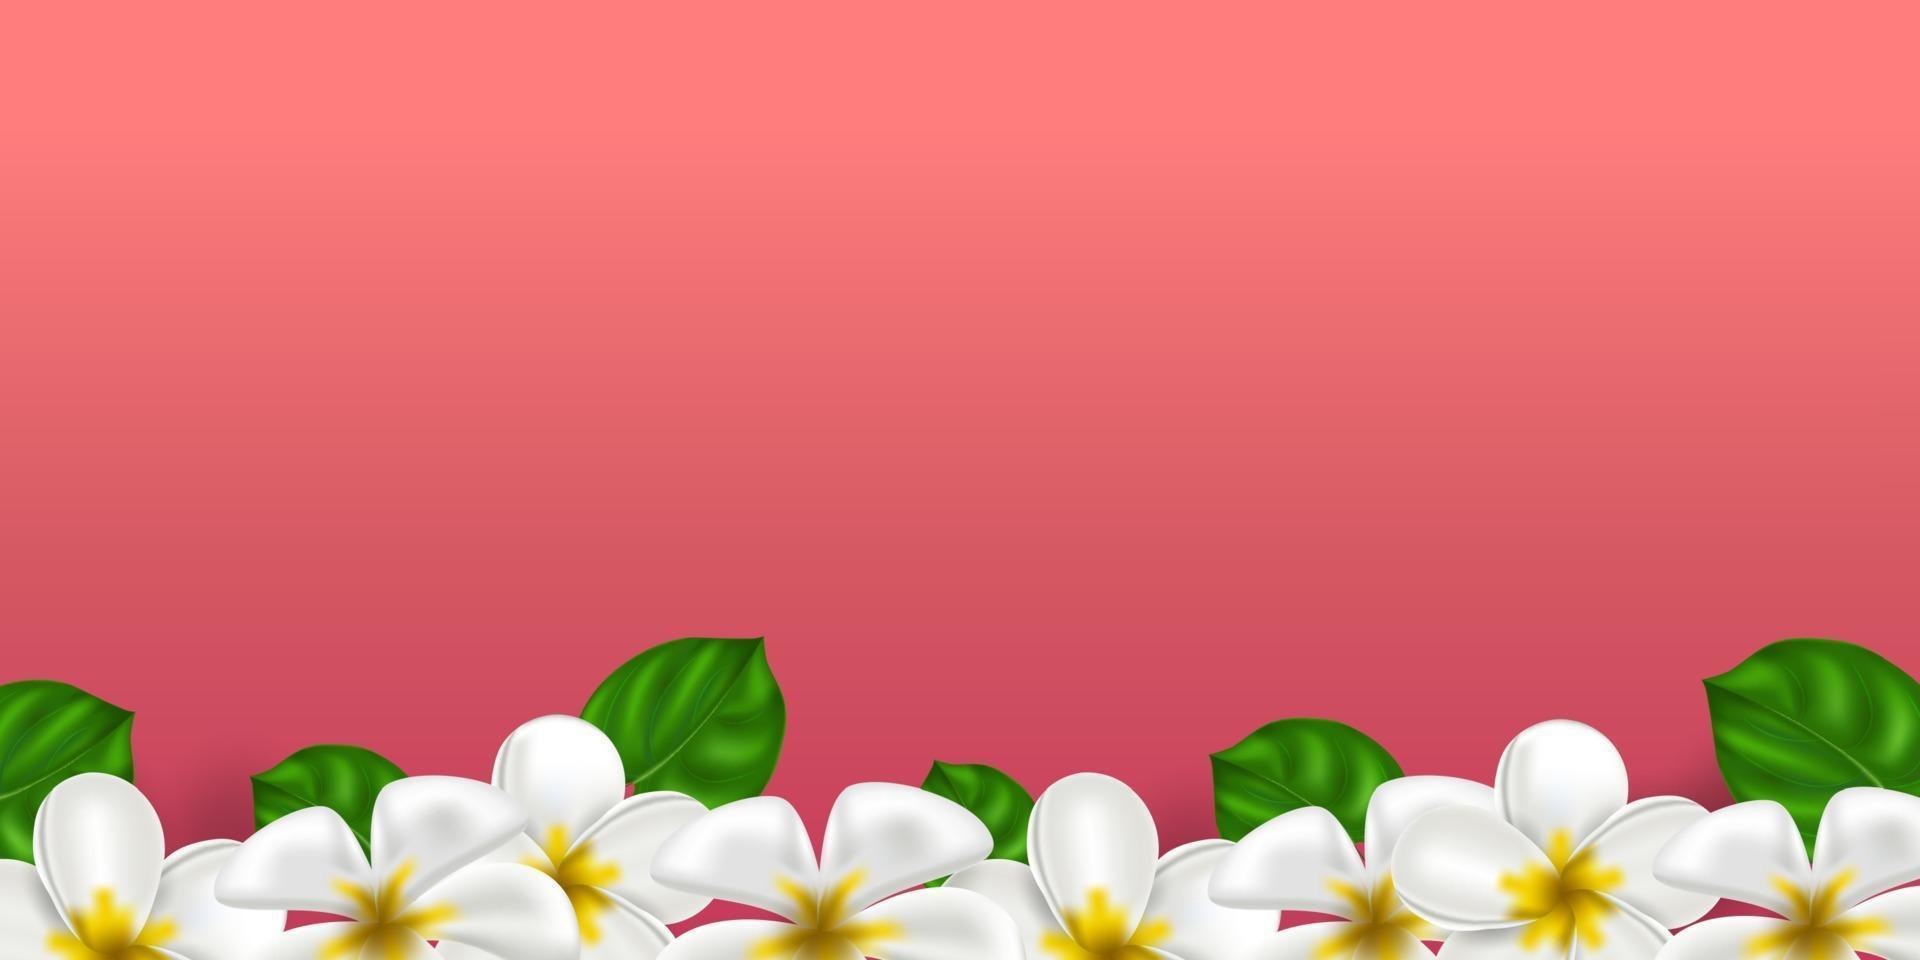 vector plumeria flor hawaiana tropical realista. frangipani de color blanco-amarillo sobre un fondo de color coral. paraíso de verano. Ilustración de naturaleza botánica para banner y tarjetas. marco floral